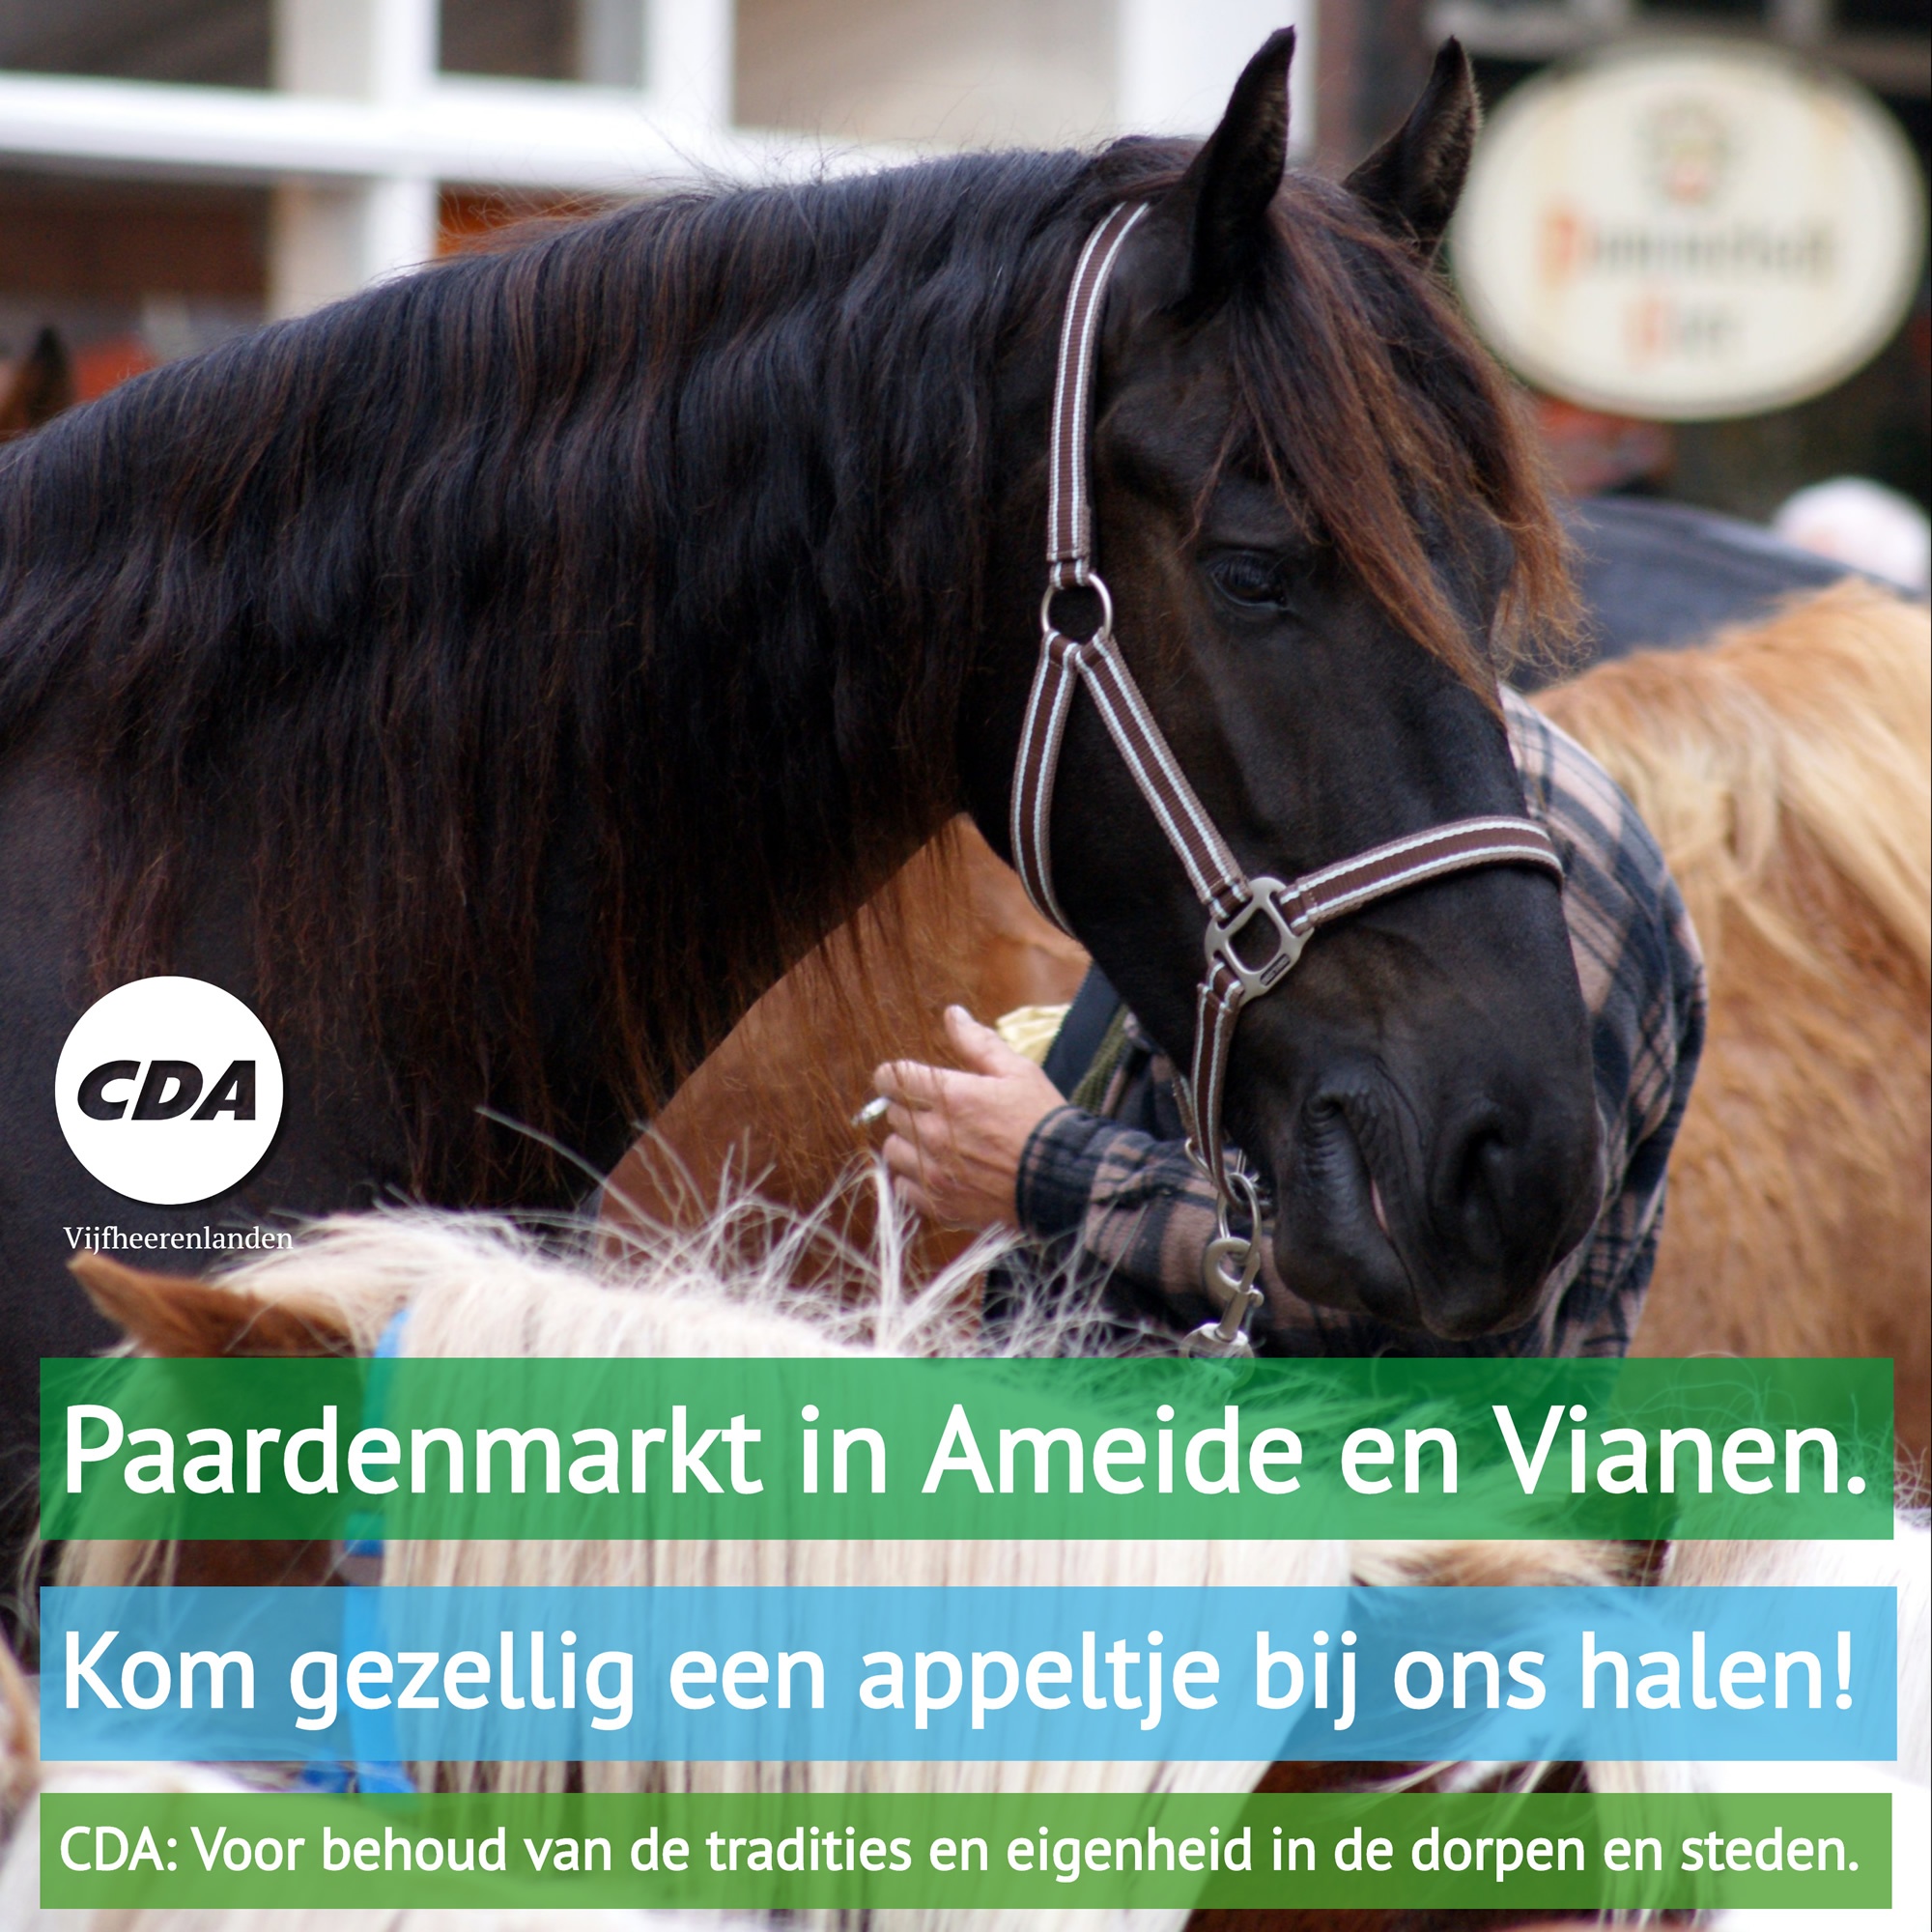 Haal een appeltje bij CDA Vijfheerenlanden tijdens de paardenmarkten.